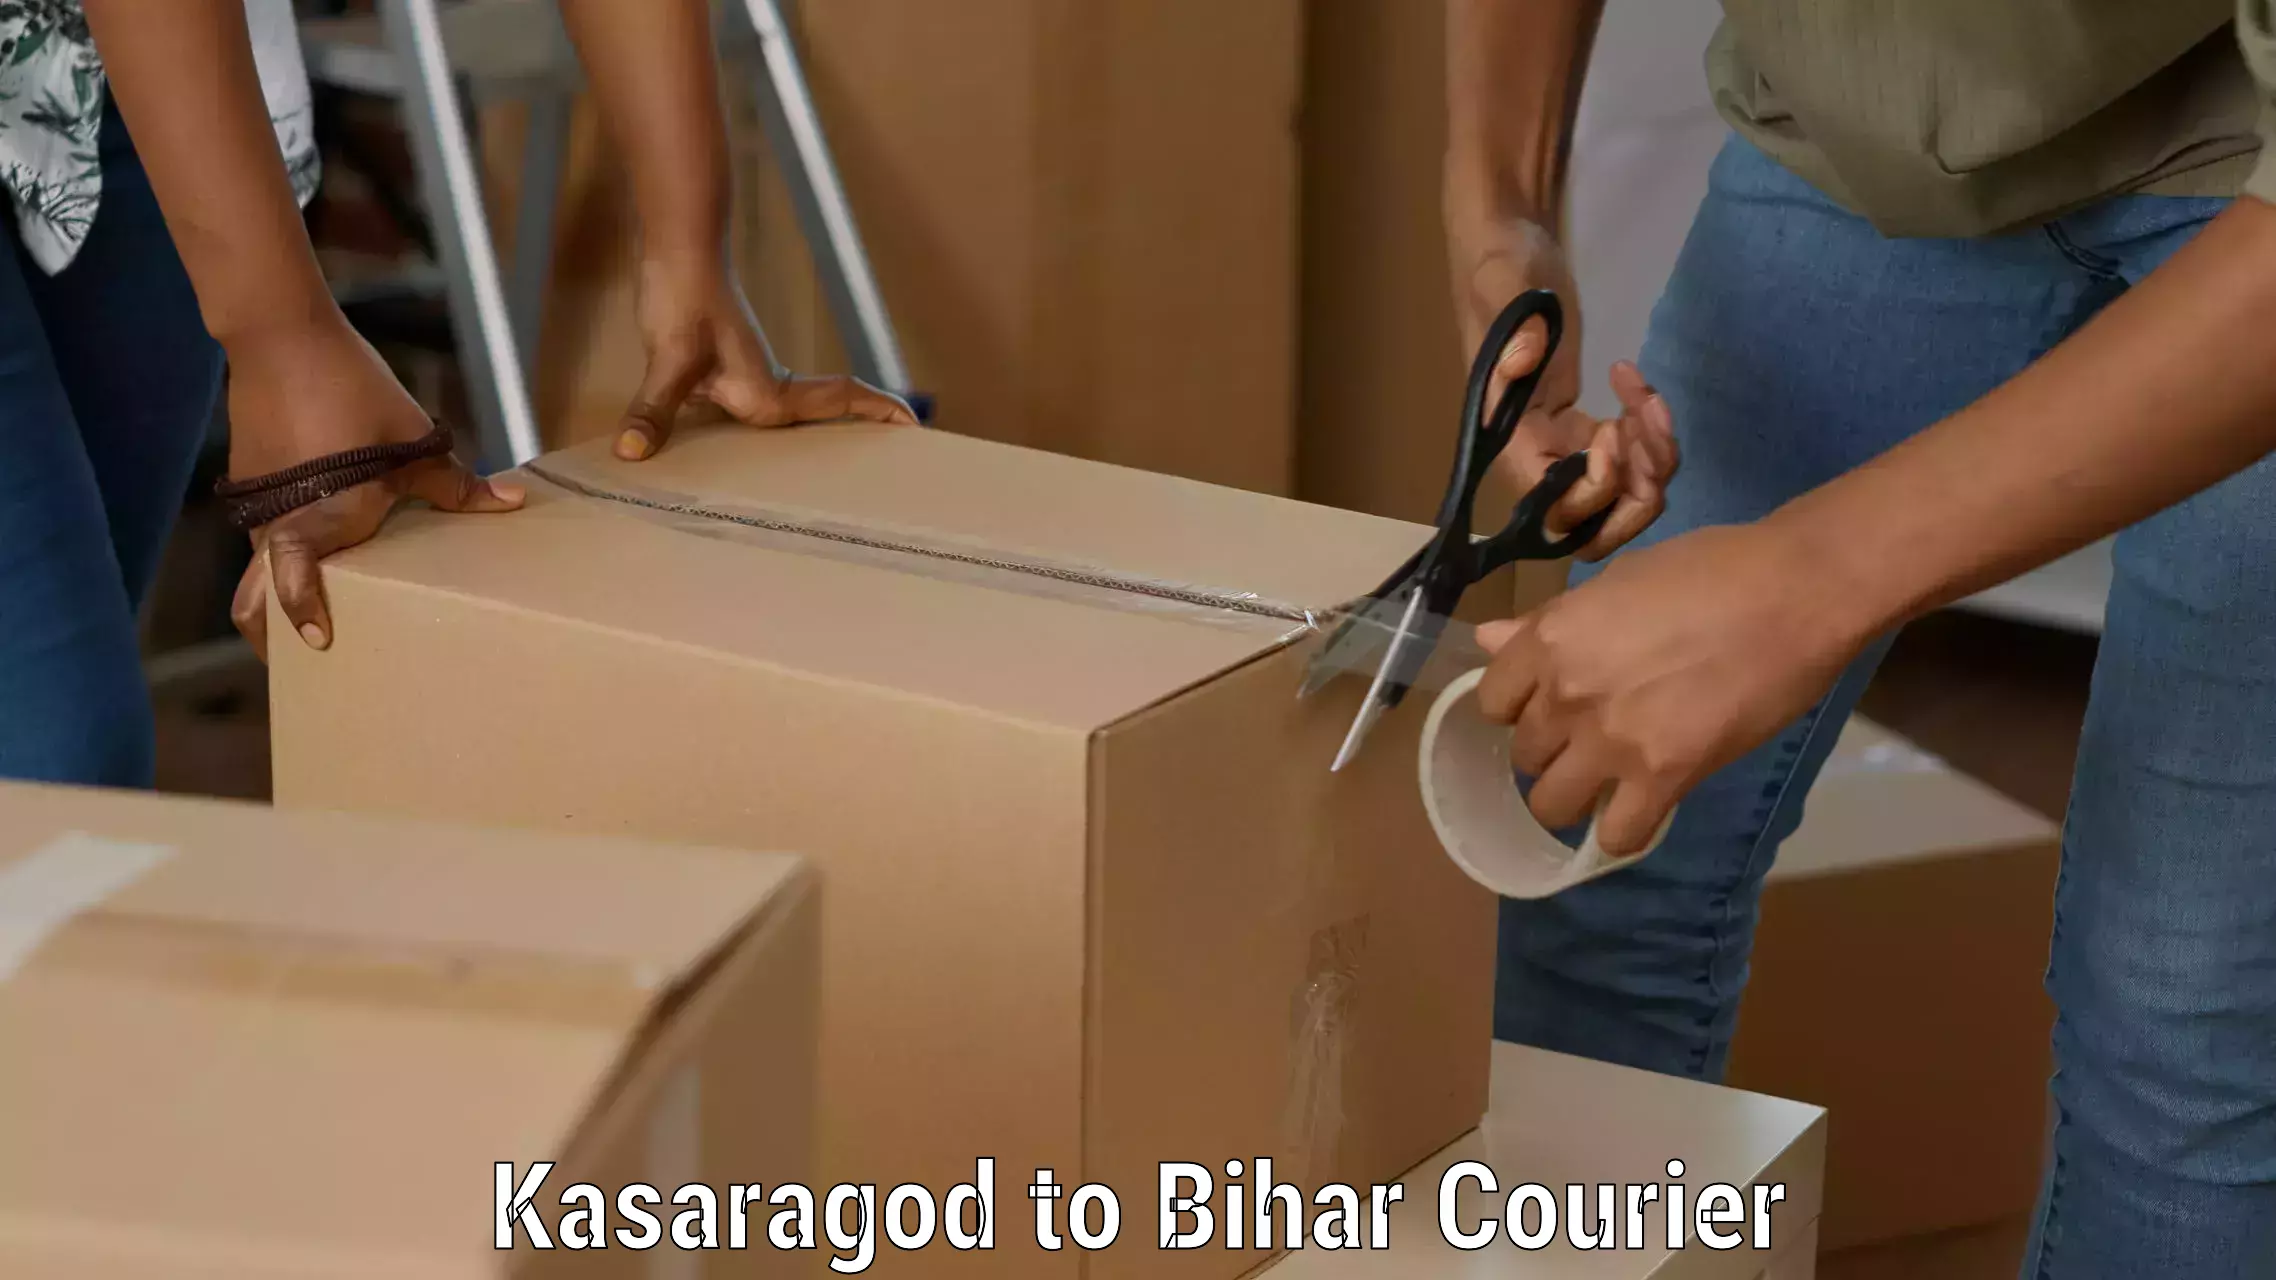 Efficient parcel delivery Kasaragod to Bihar